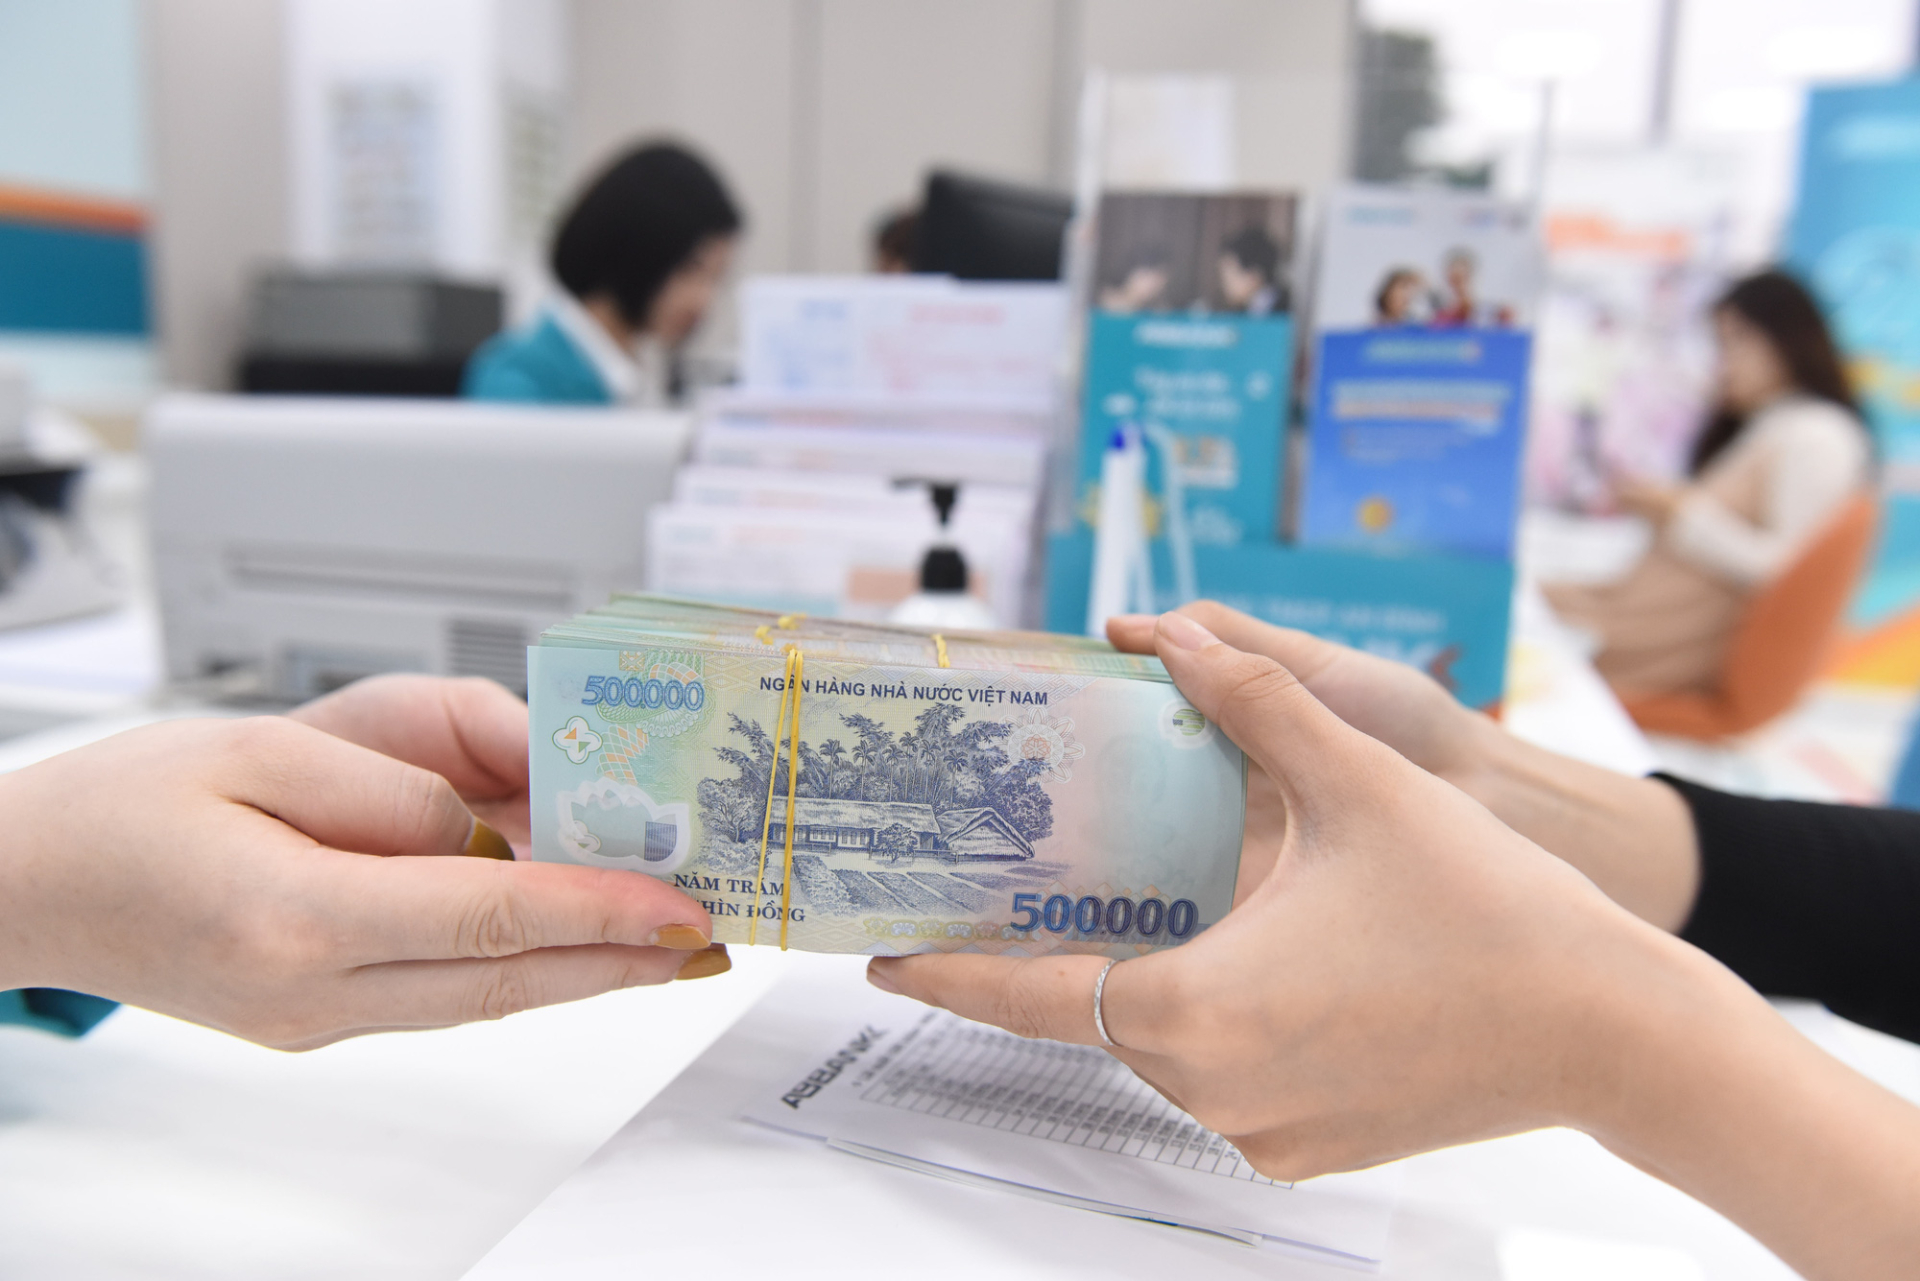 Một số người đến ngân hàng đóng tài khoản thì bị yêu cầu phải nộp phí duy trì mỗi tháng trong khoảng thời gian không sử dụng thẻ